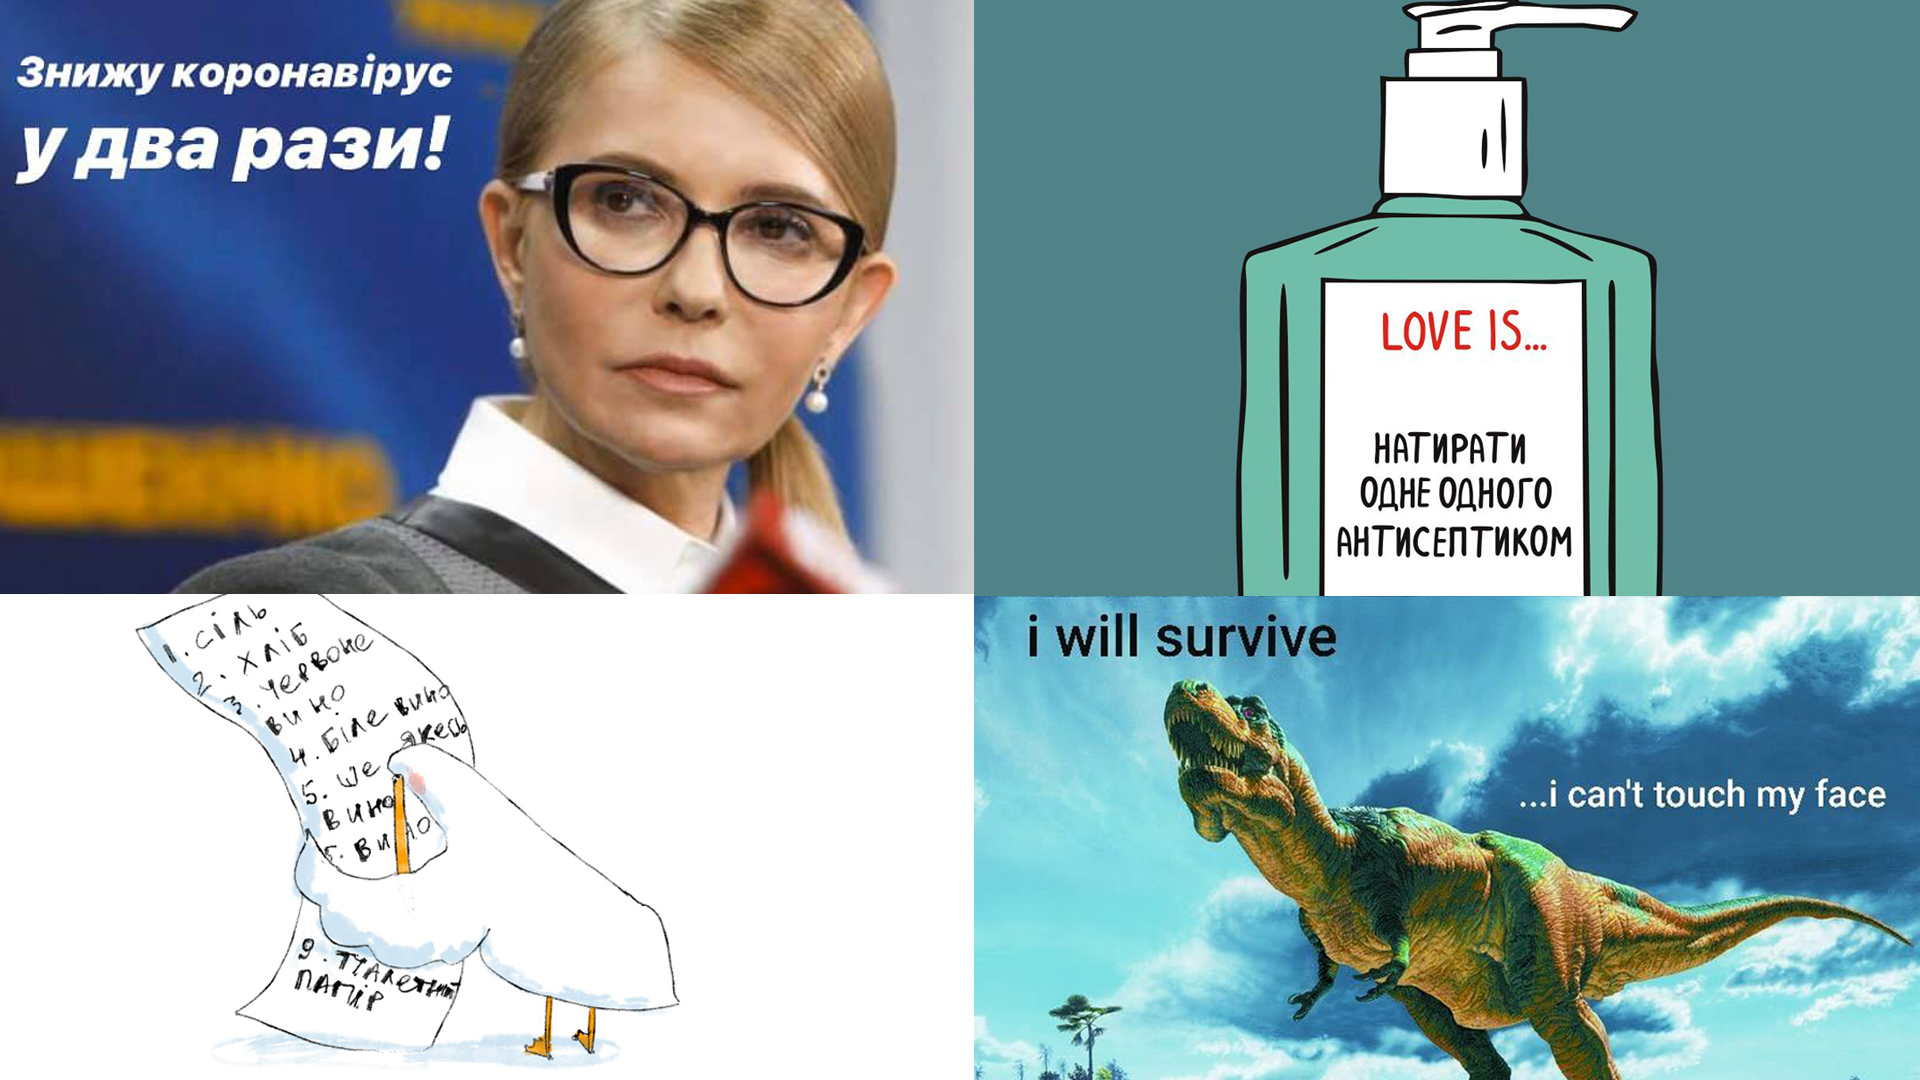 «Выживут только тираннозавры»: подборка мемов об ограничениях из-за коронавируса